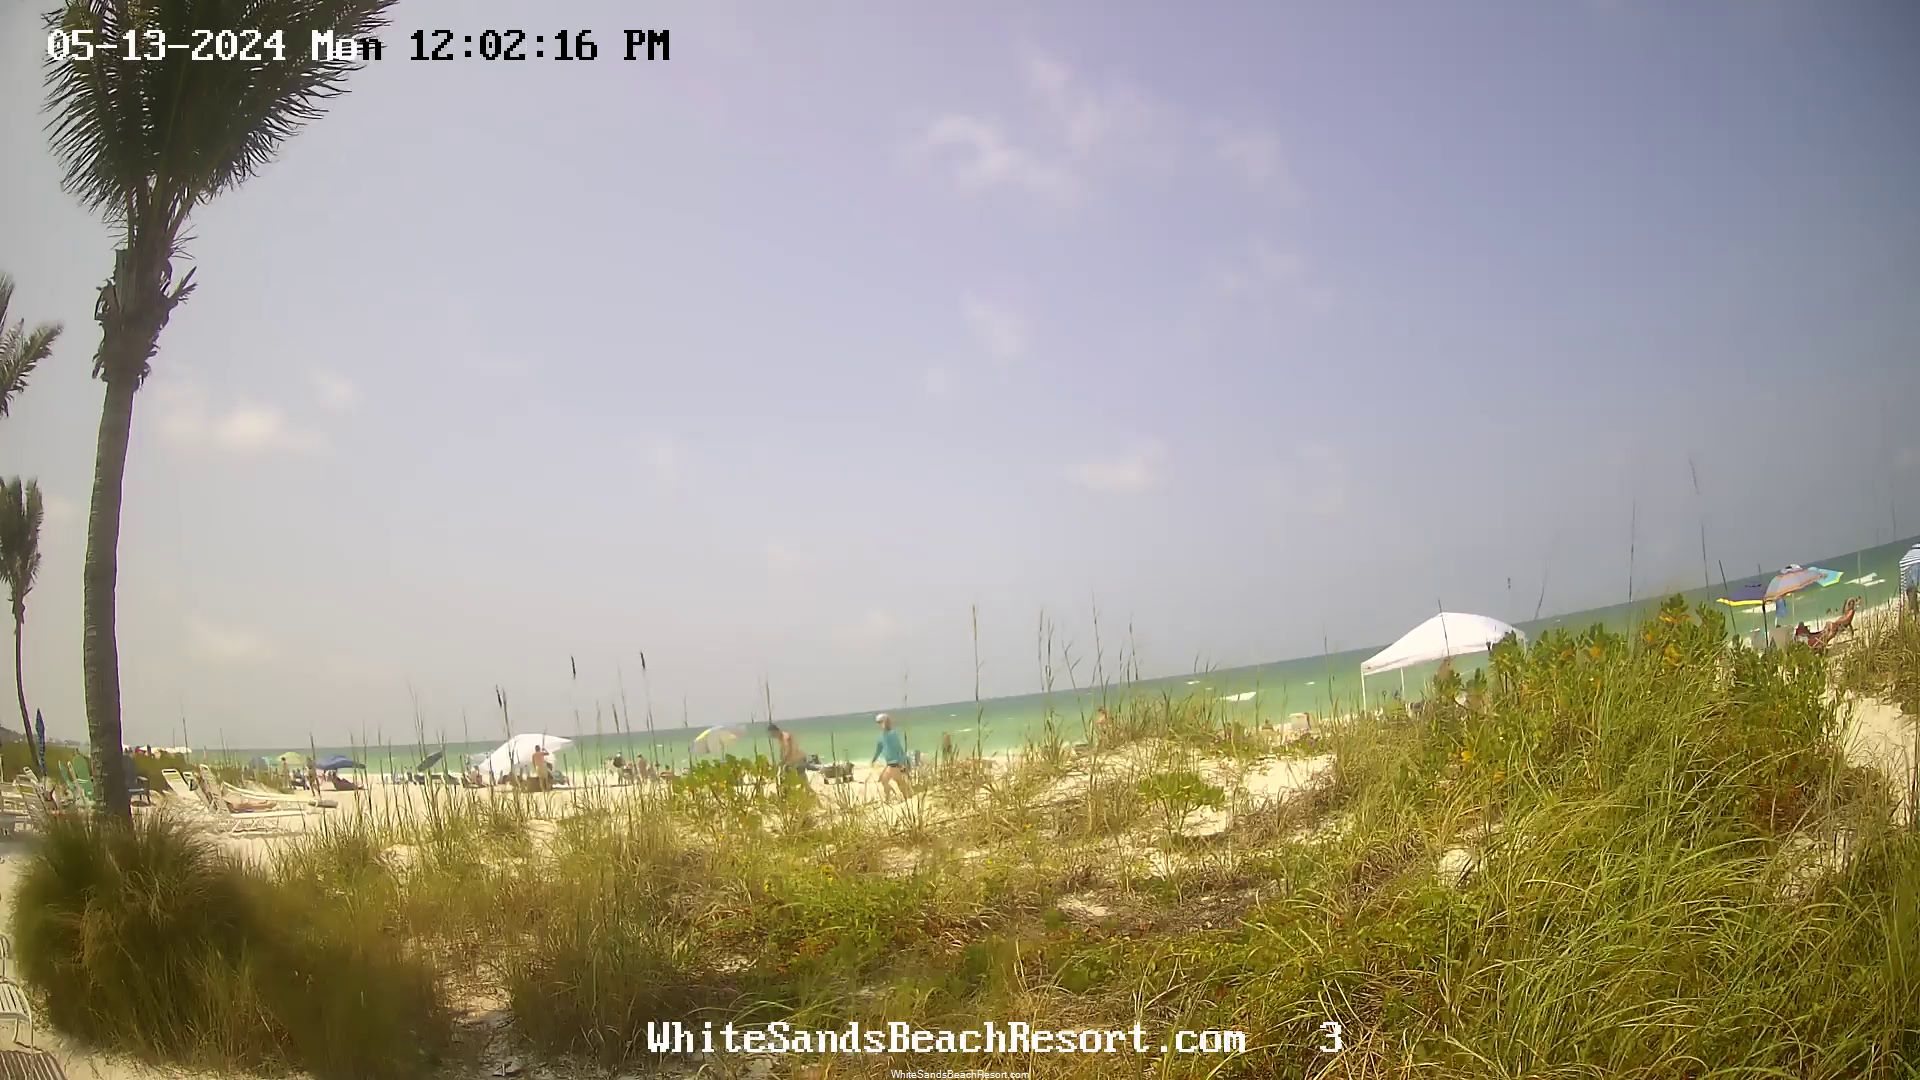 Holmes Beach, Florida Thu. 11:56